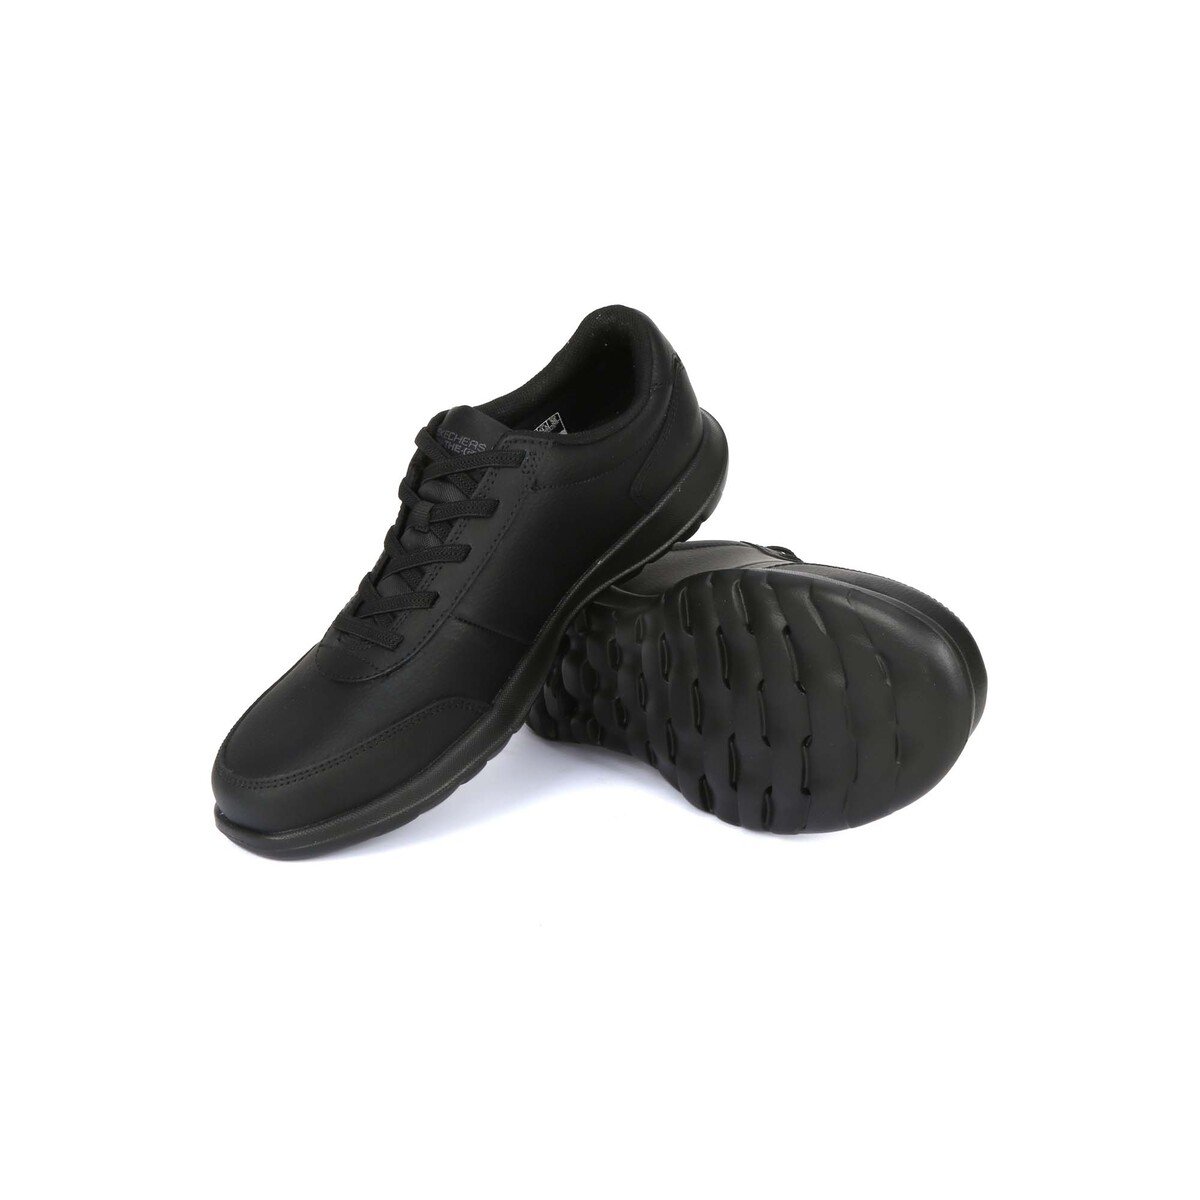 Skechers Women's Sports Shoes 15458-BBK Black, 35